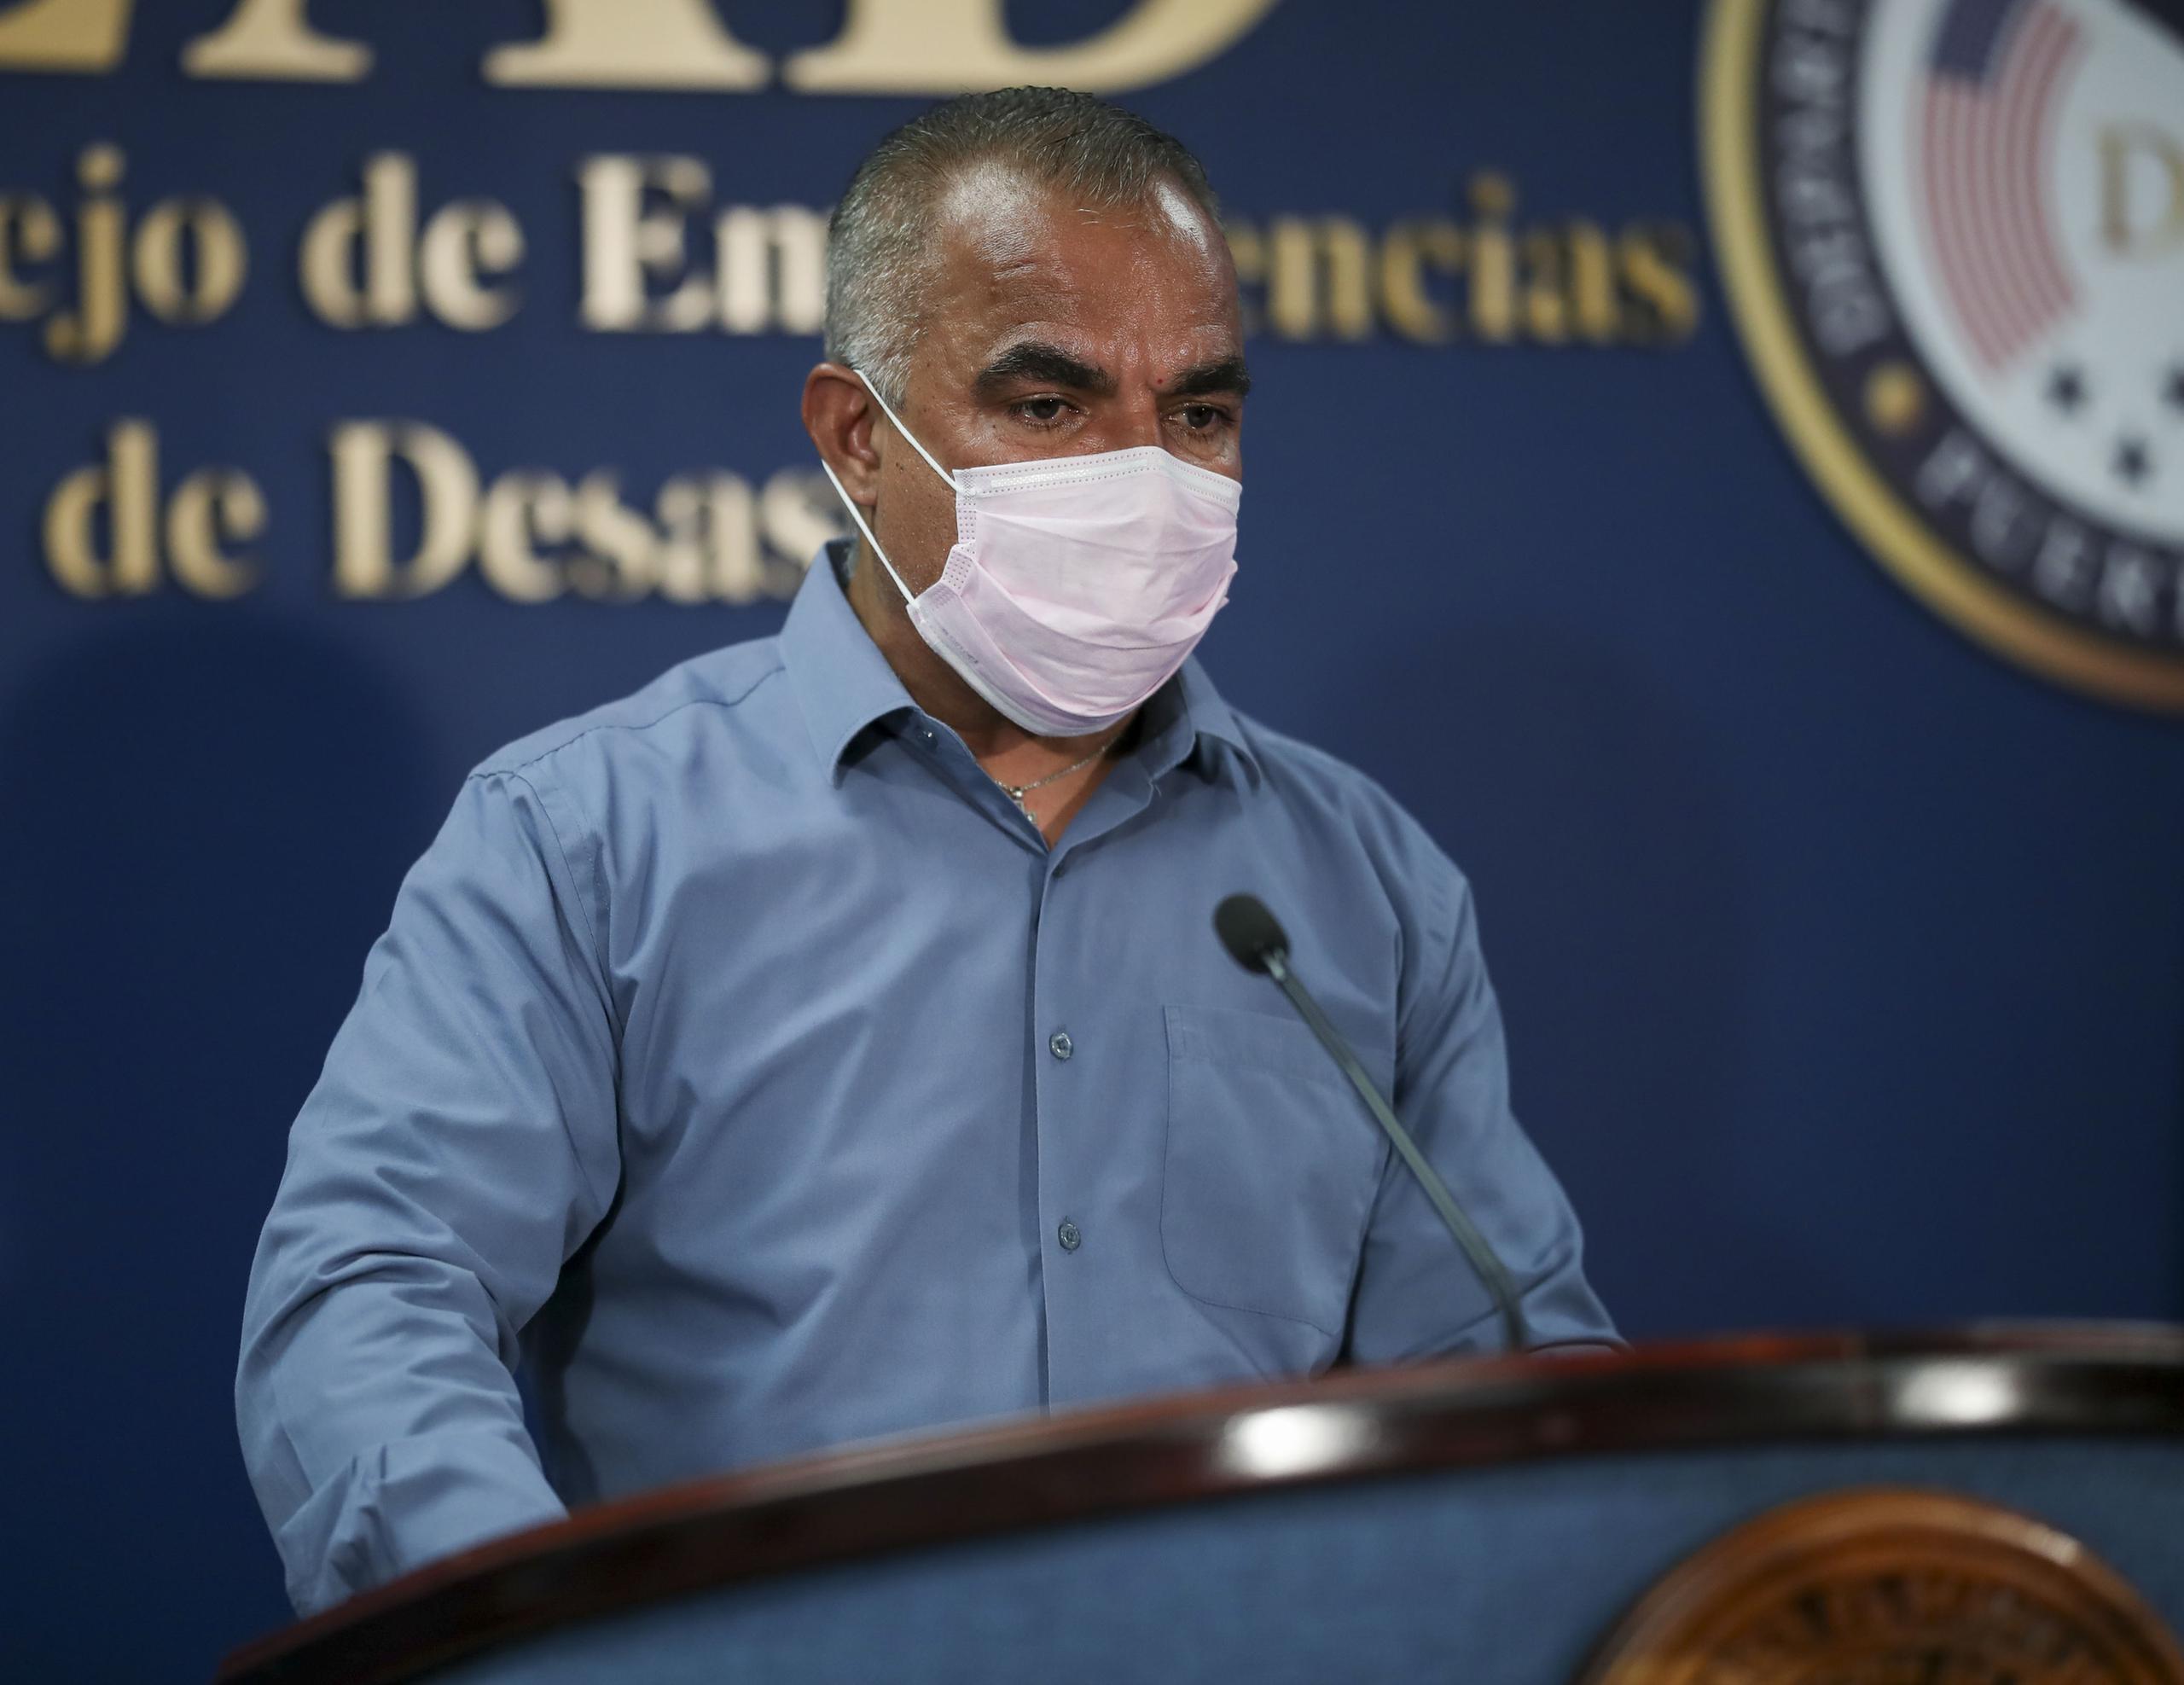 “En el Departamento de Salud lo más importante es velar por la integridad de nuestros procesos, así como el bienestar y seguridad de la ciudadanía", aseguró el secretario Lorenzo González.